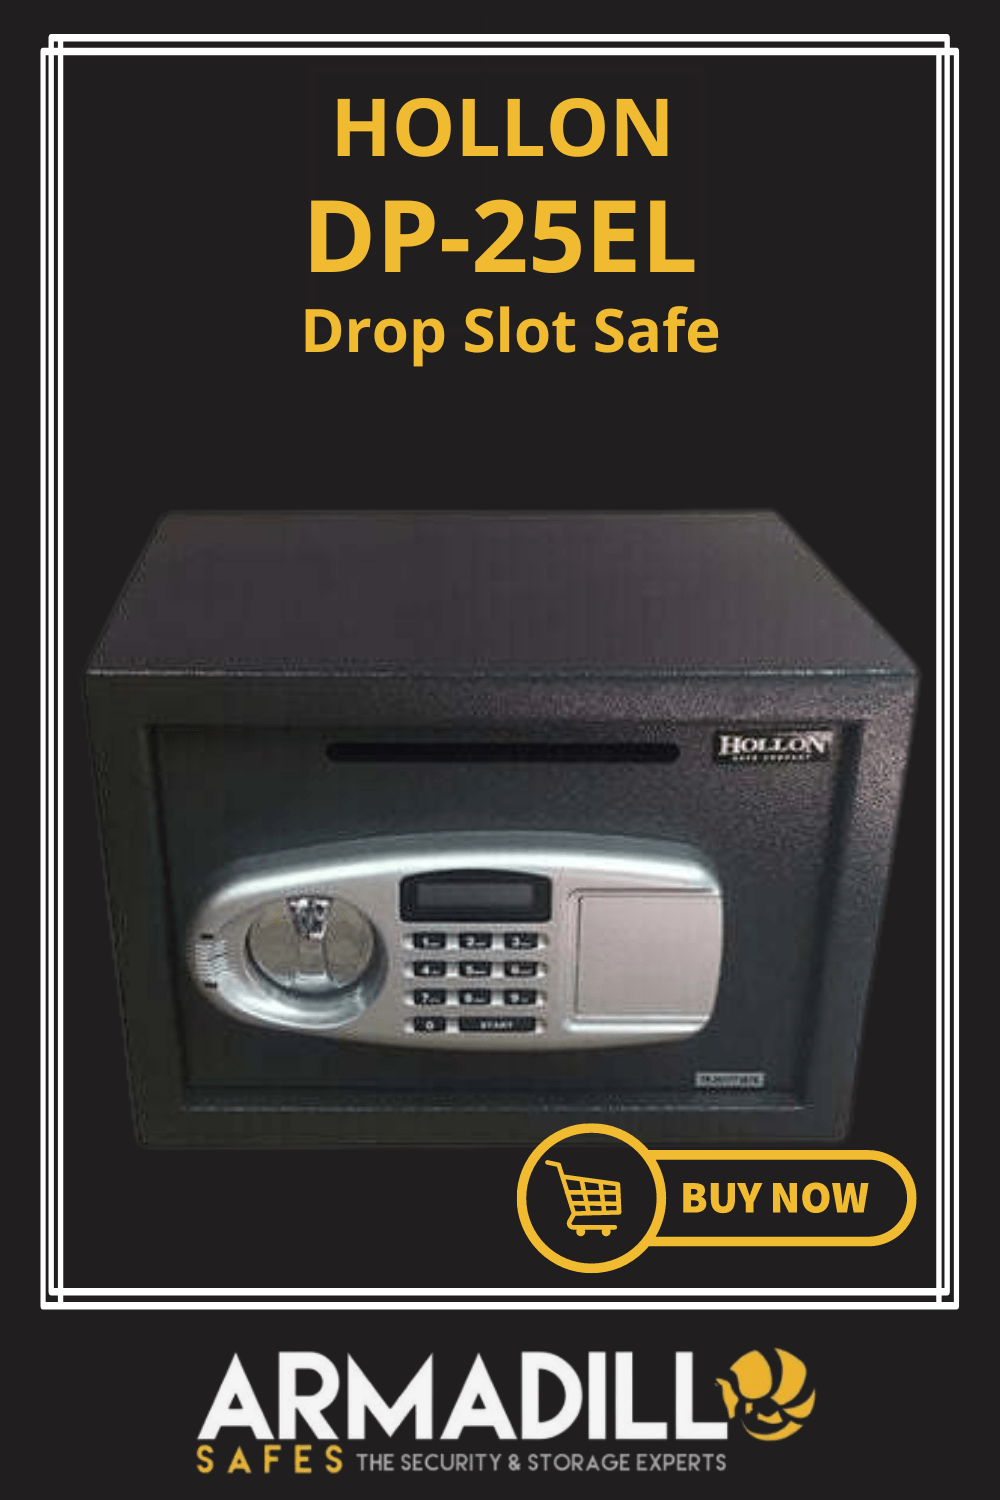 Hollon DP-25EL Drop Slot Safe Armadillo Safe and Vault